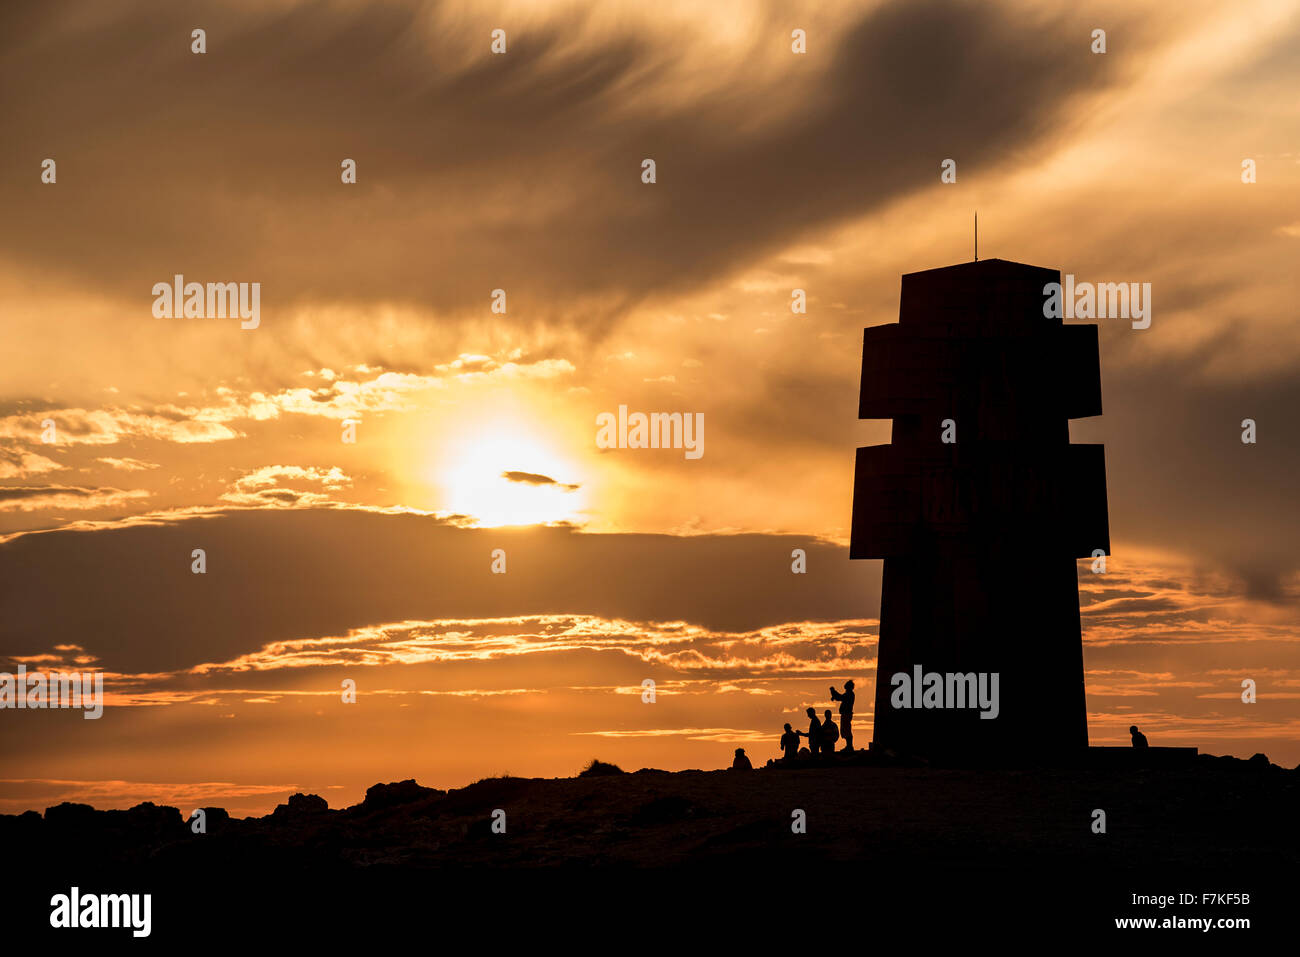 Les touristes visitant le monument aux Bretons de la France Libre / Cross de Pen Hir au coucher du soleil, de la pointe de Pen-Hir, Bretagne, France Banque D'Images